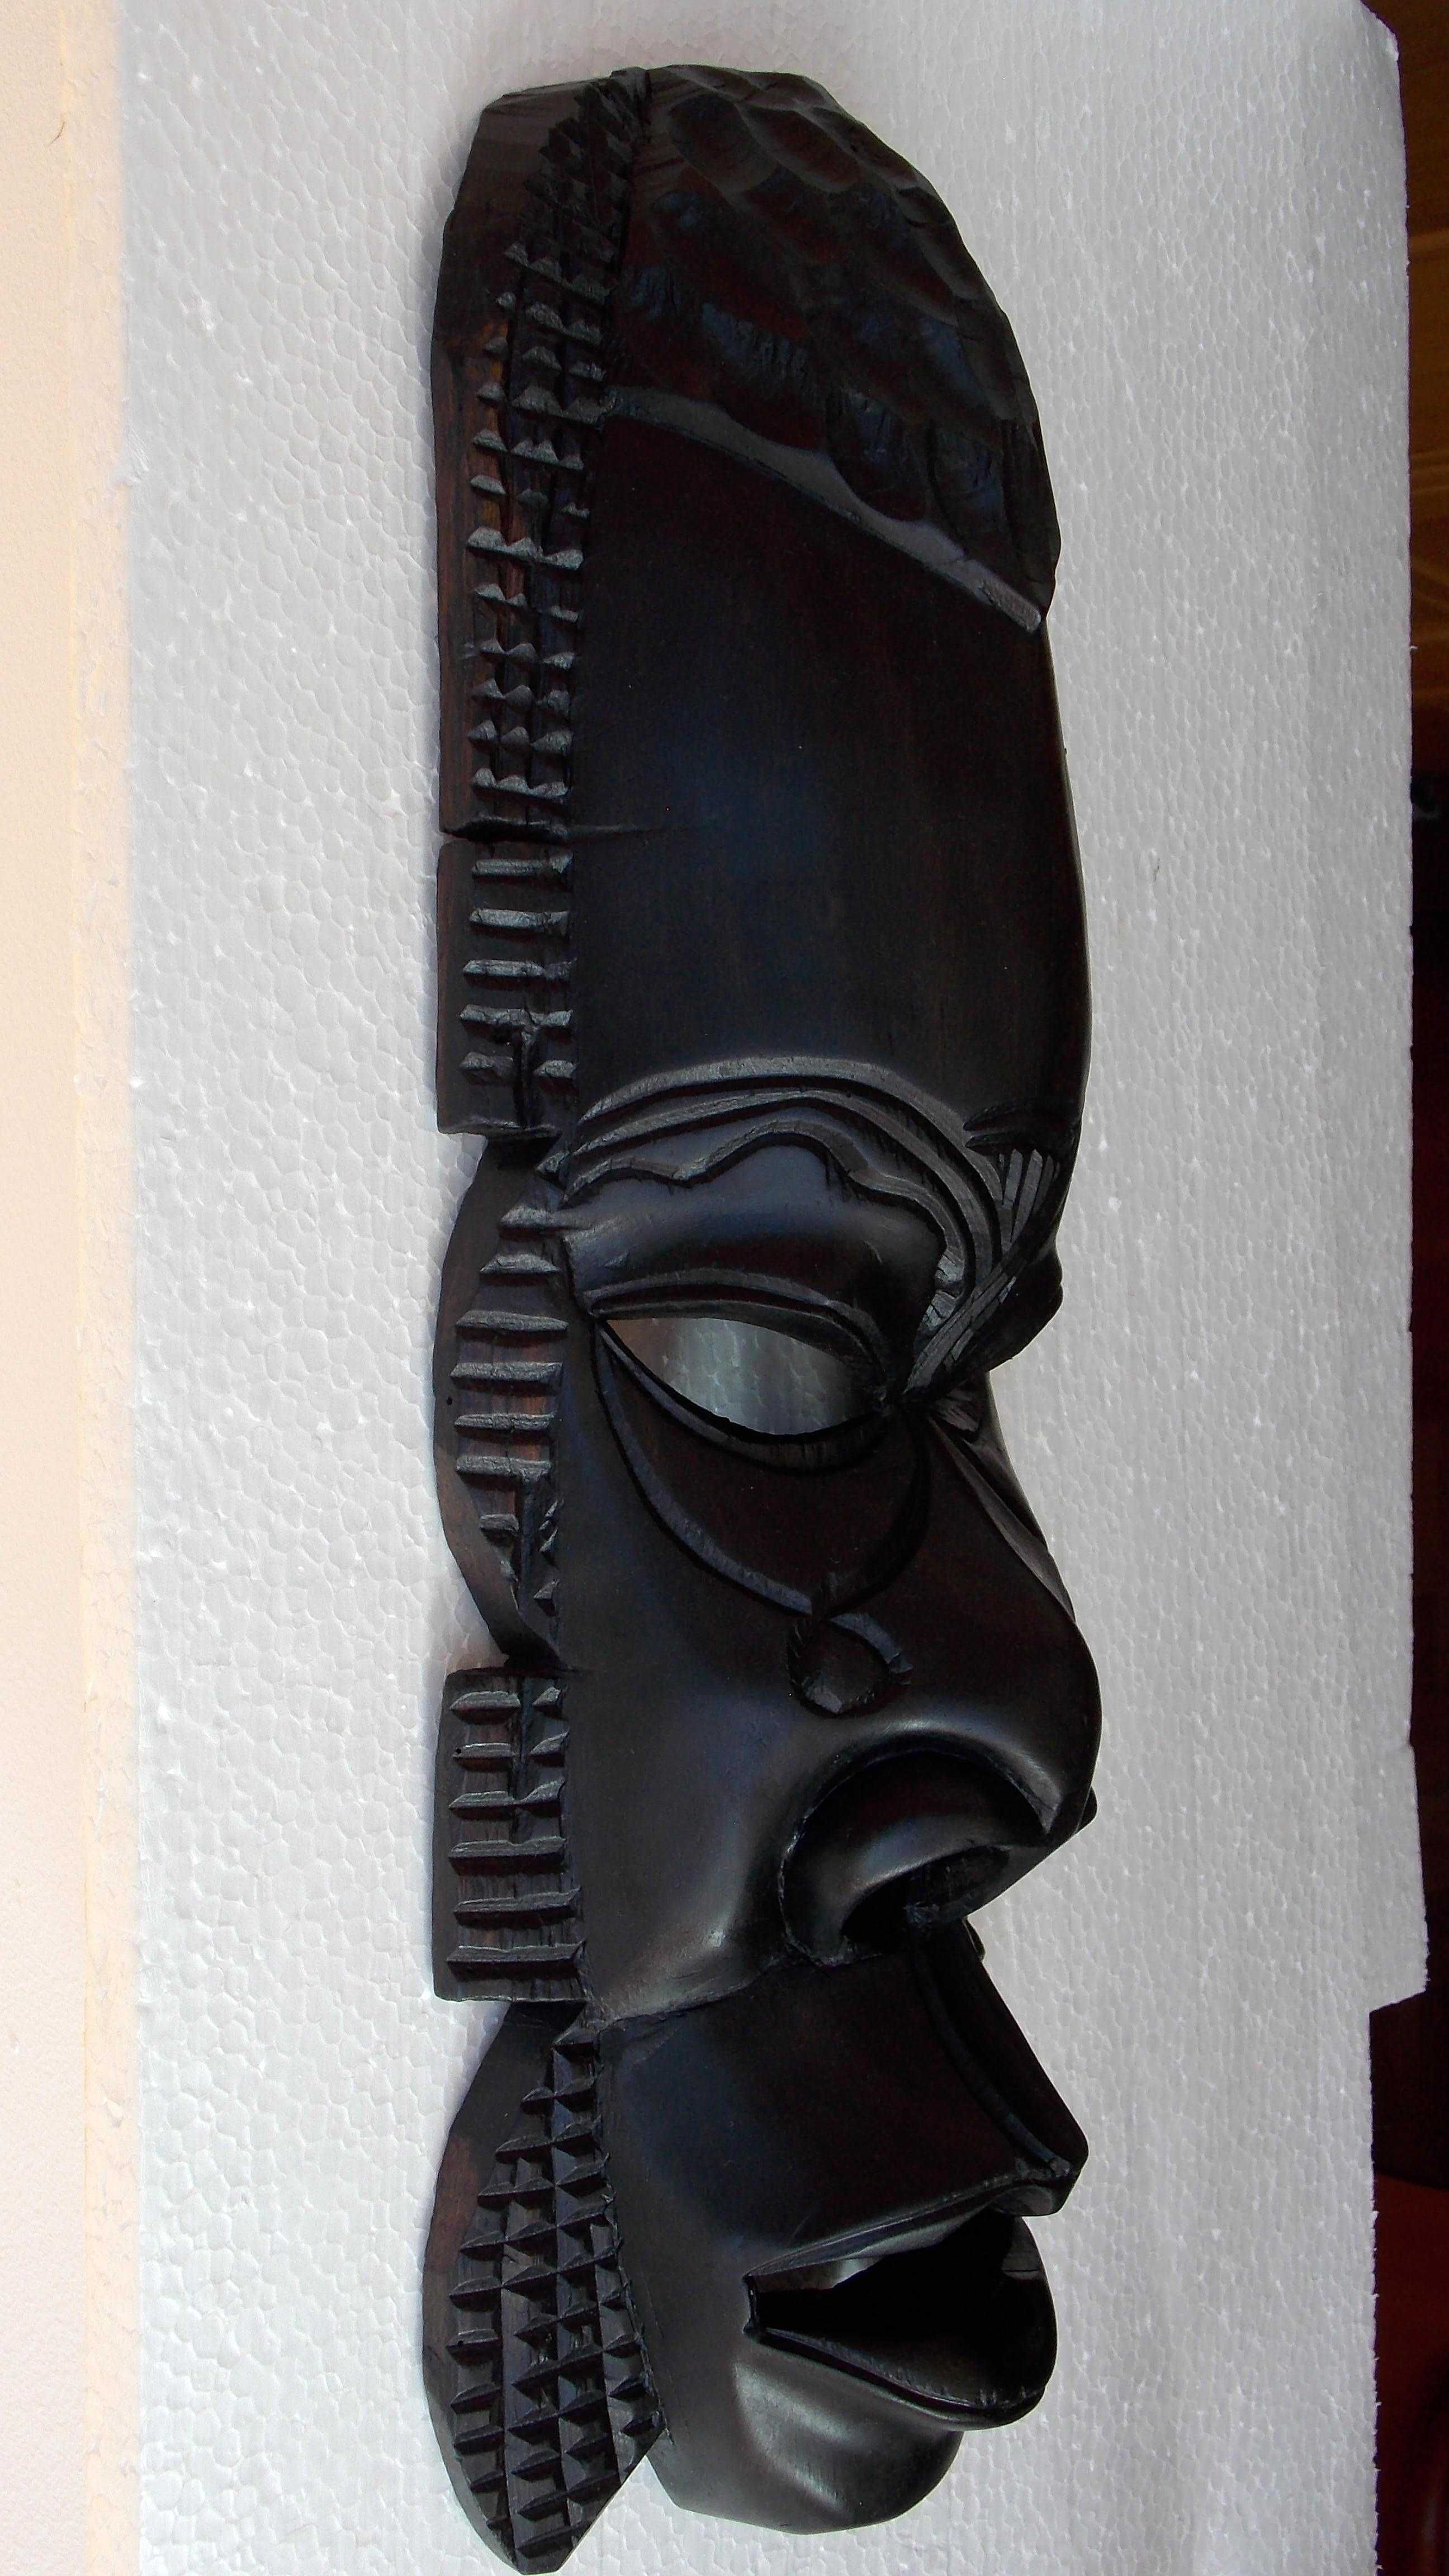 statueta lemn abanos masca sculptura arta africana veche antichitati